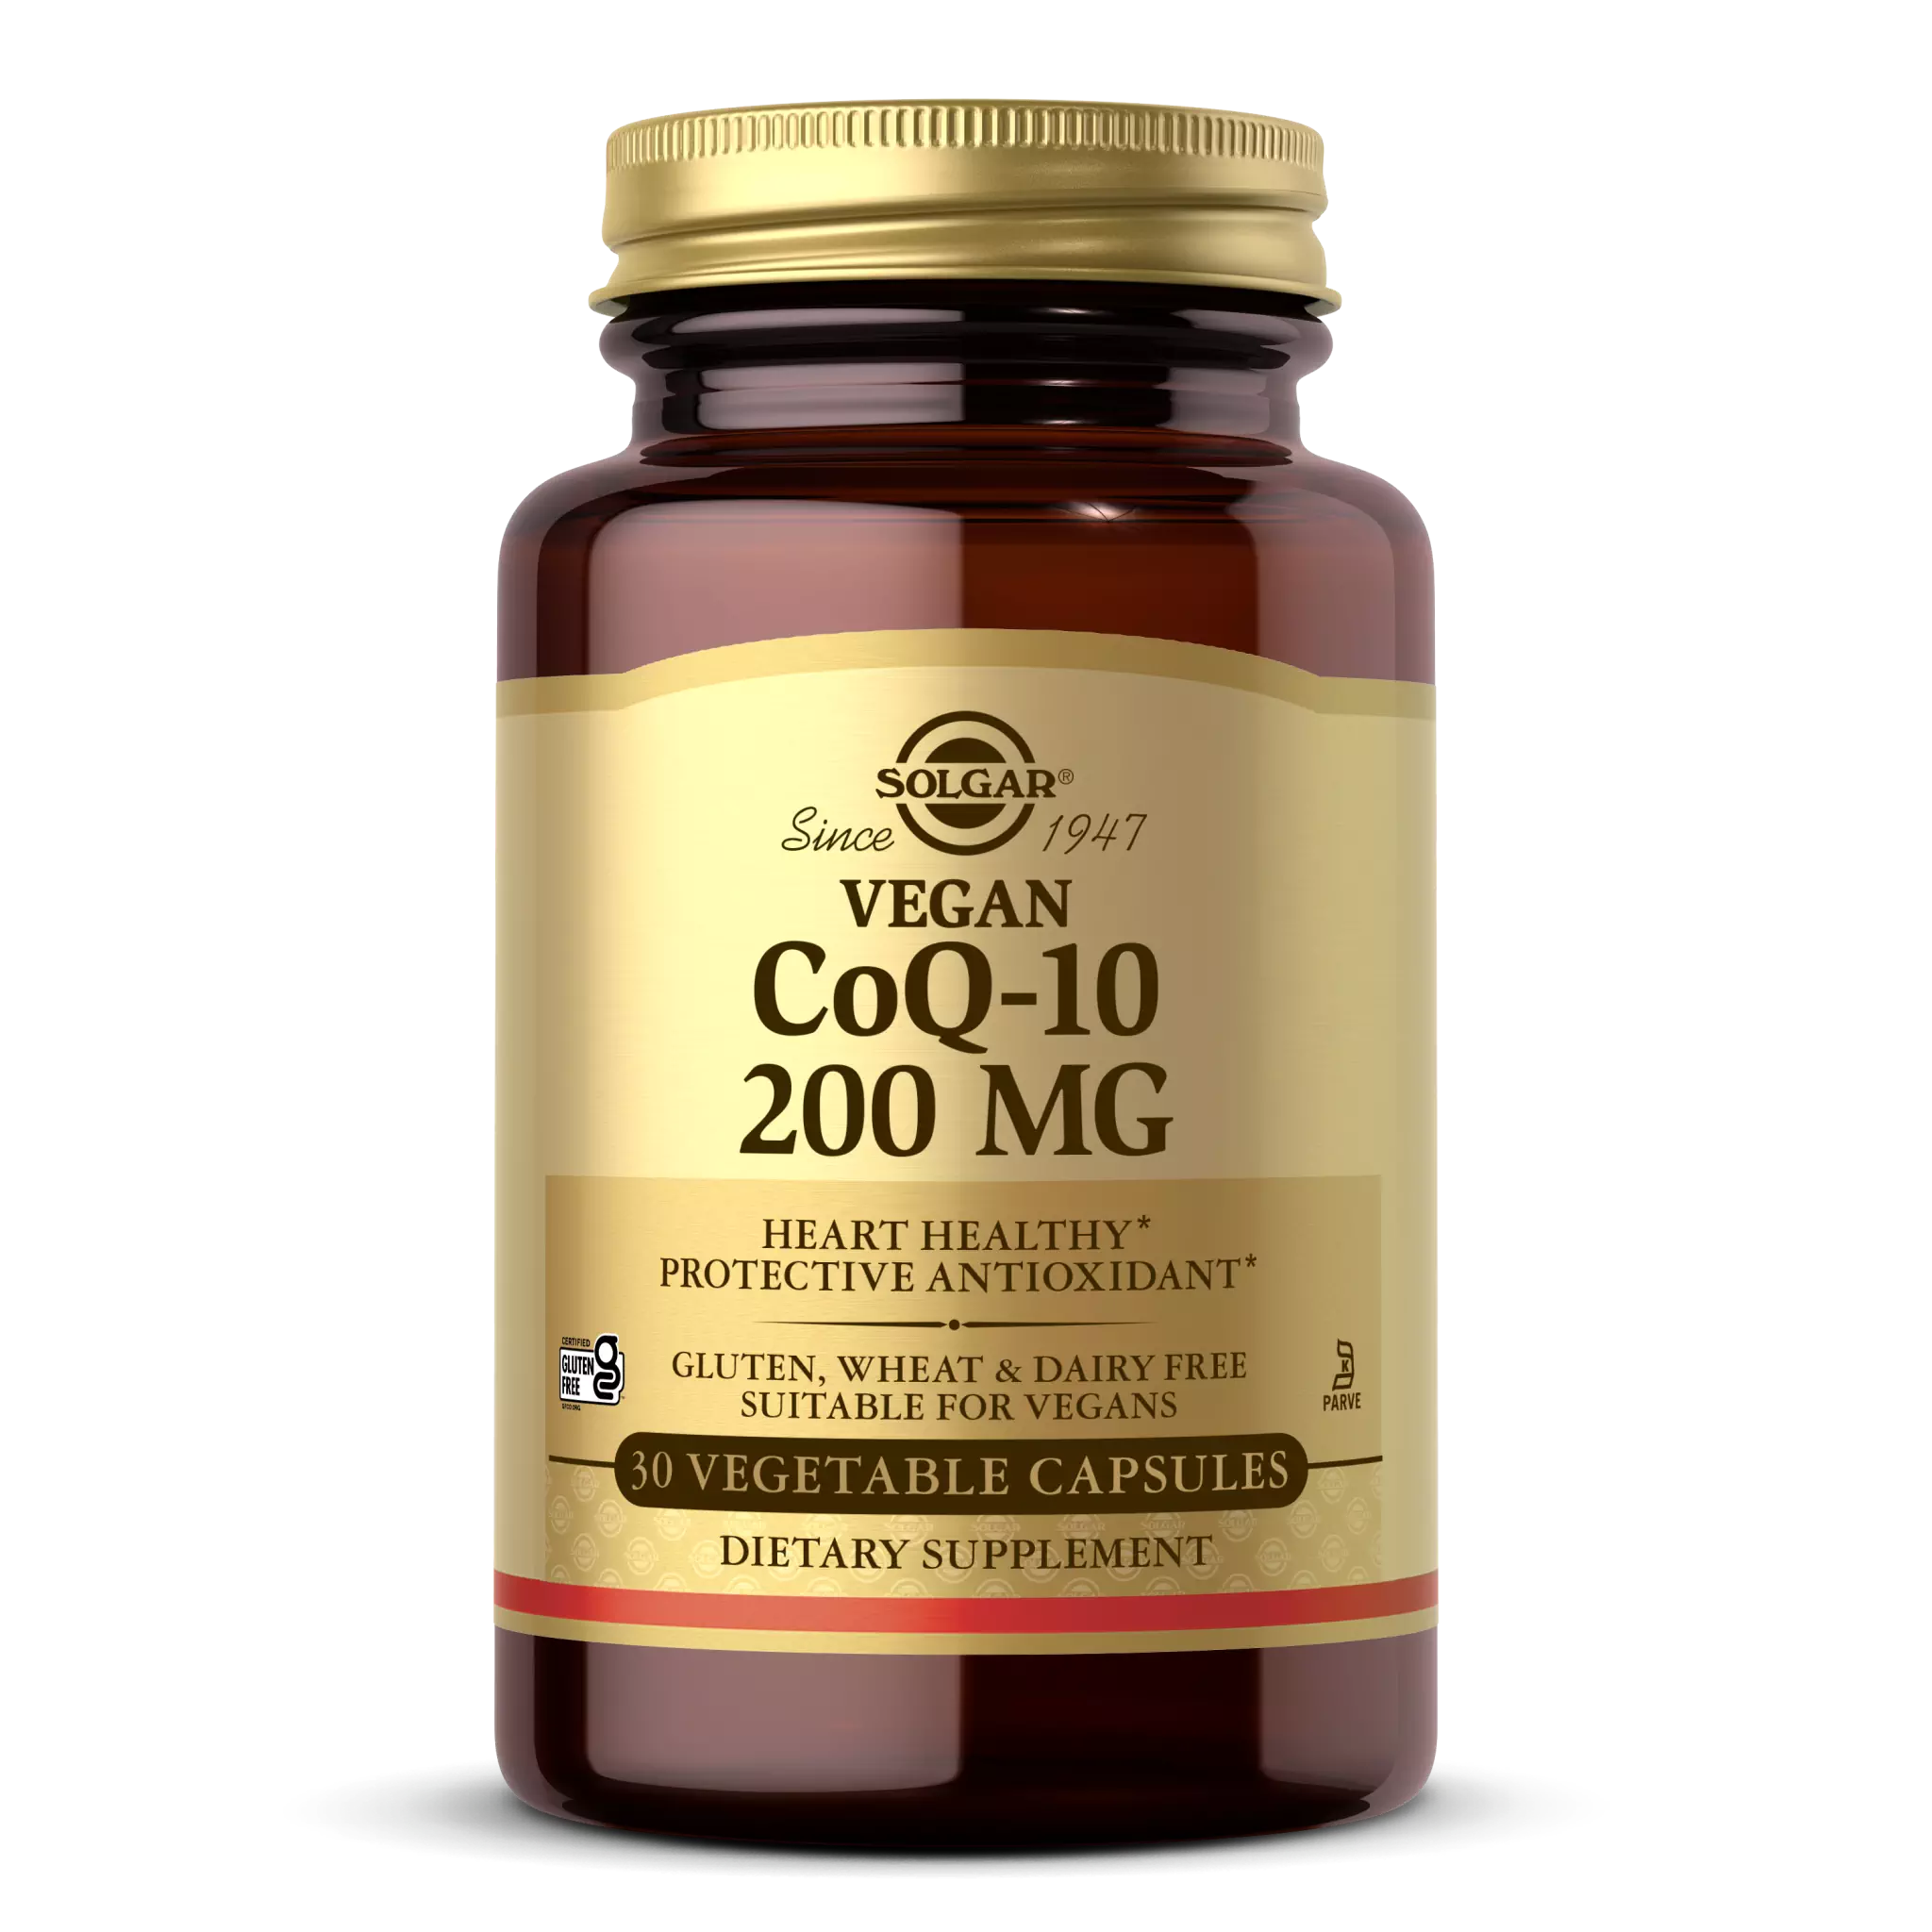 Solgar - Coq10 200 mg